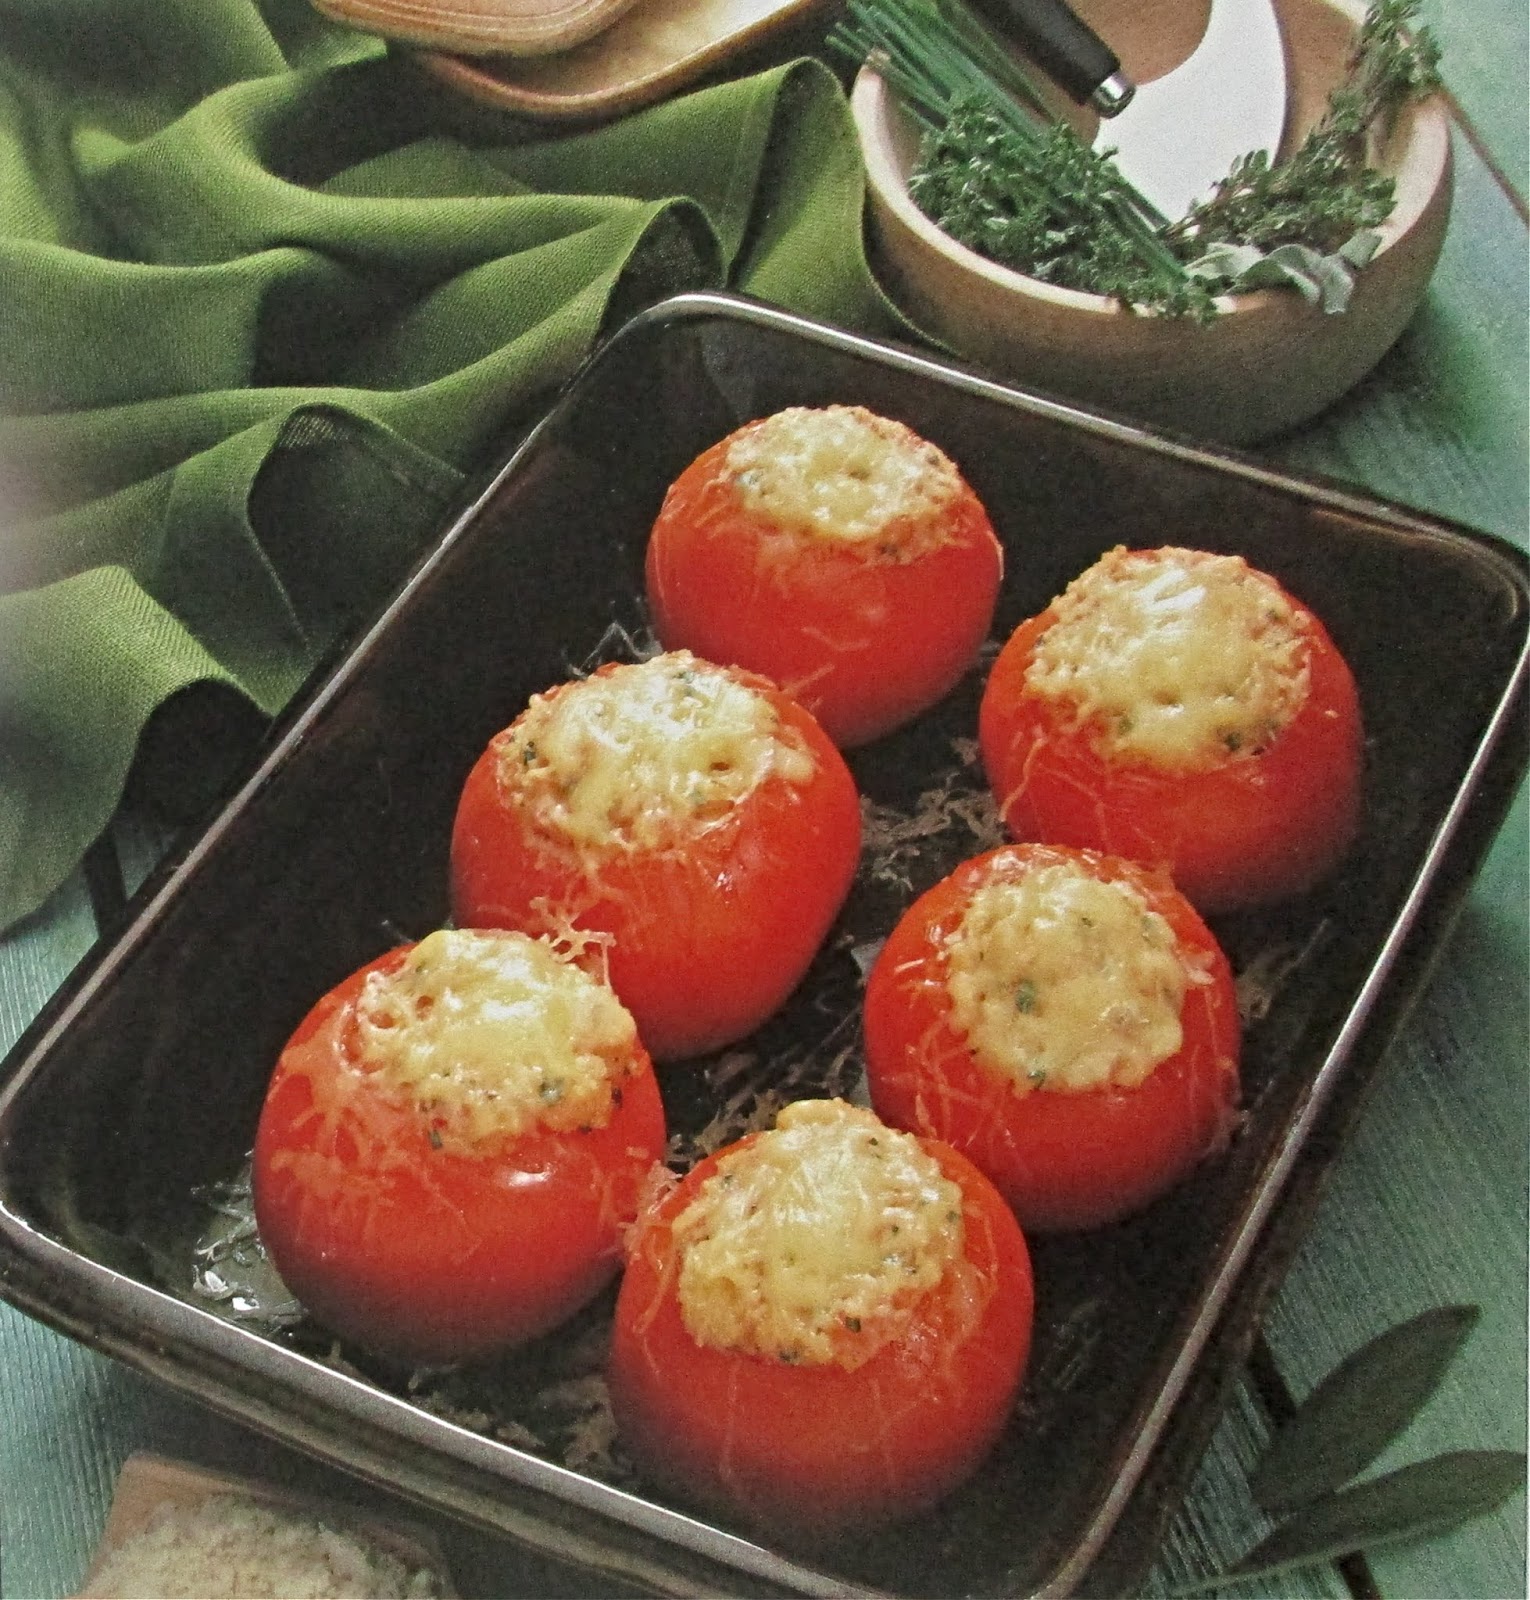 Фаршированные помидоры с фаршем и сыром